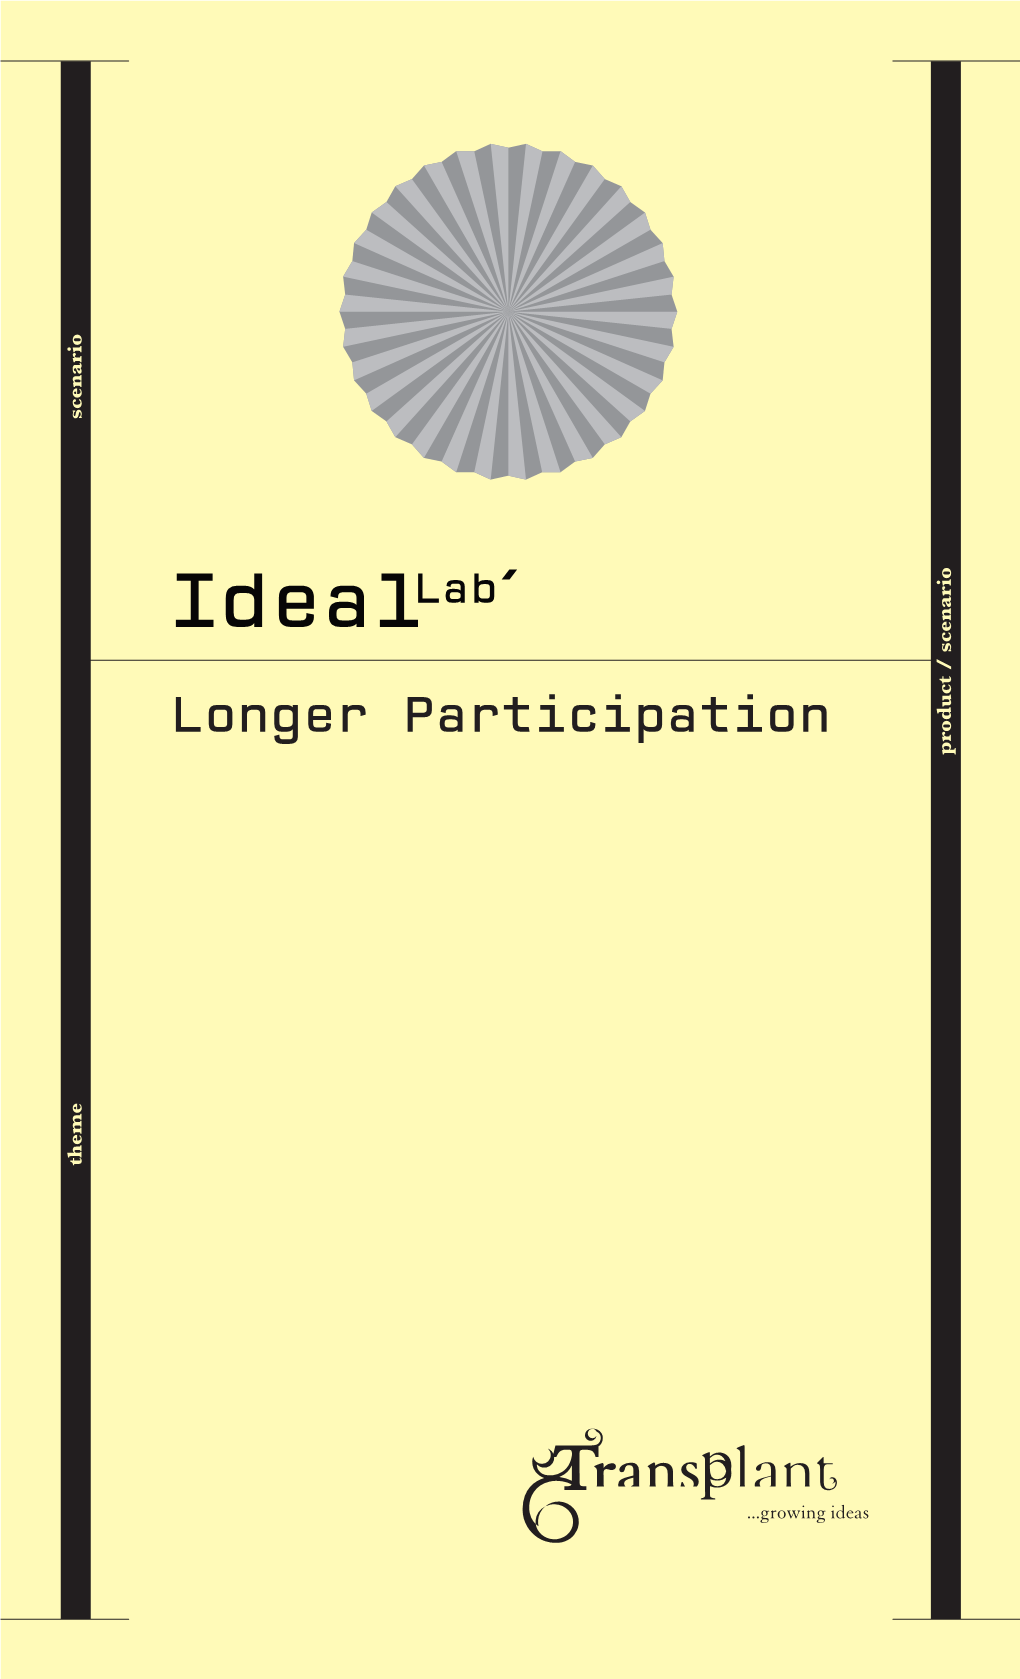 Longer Participation Product / Scenario Product Theme